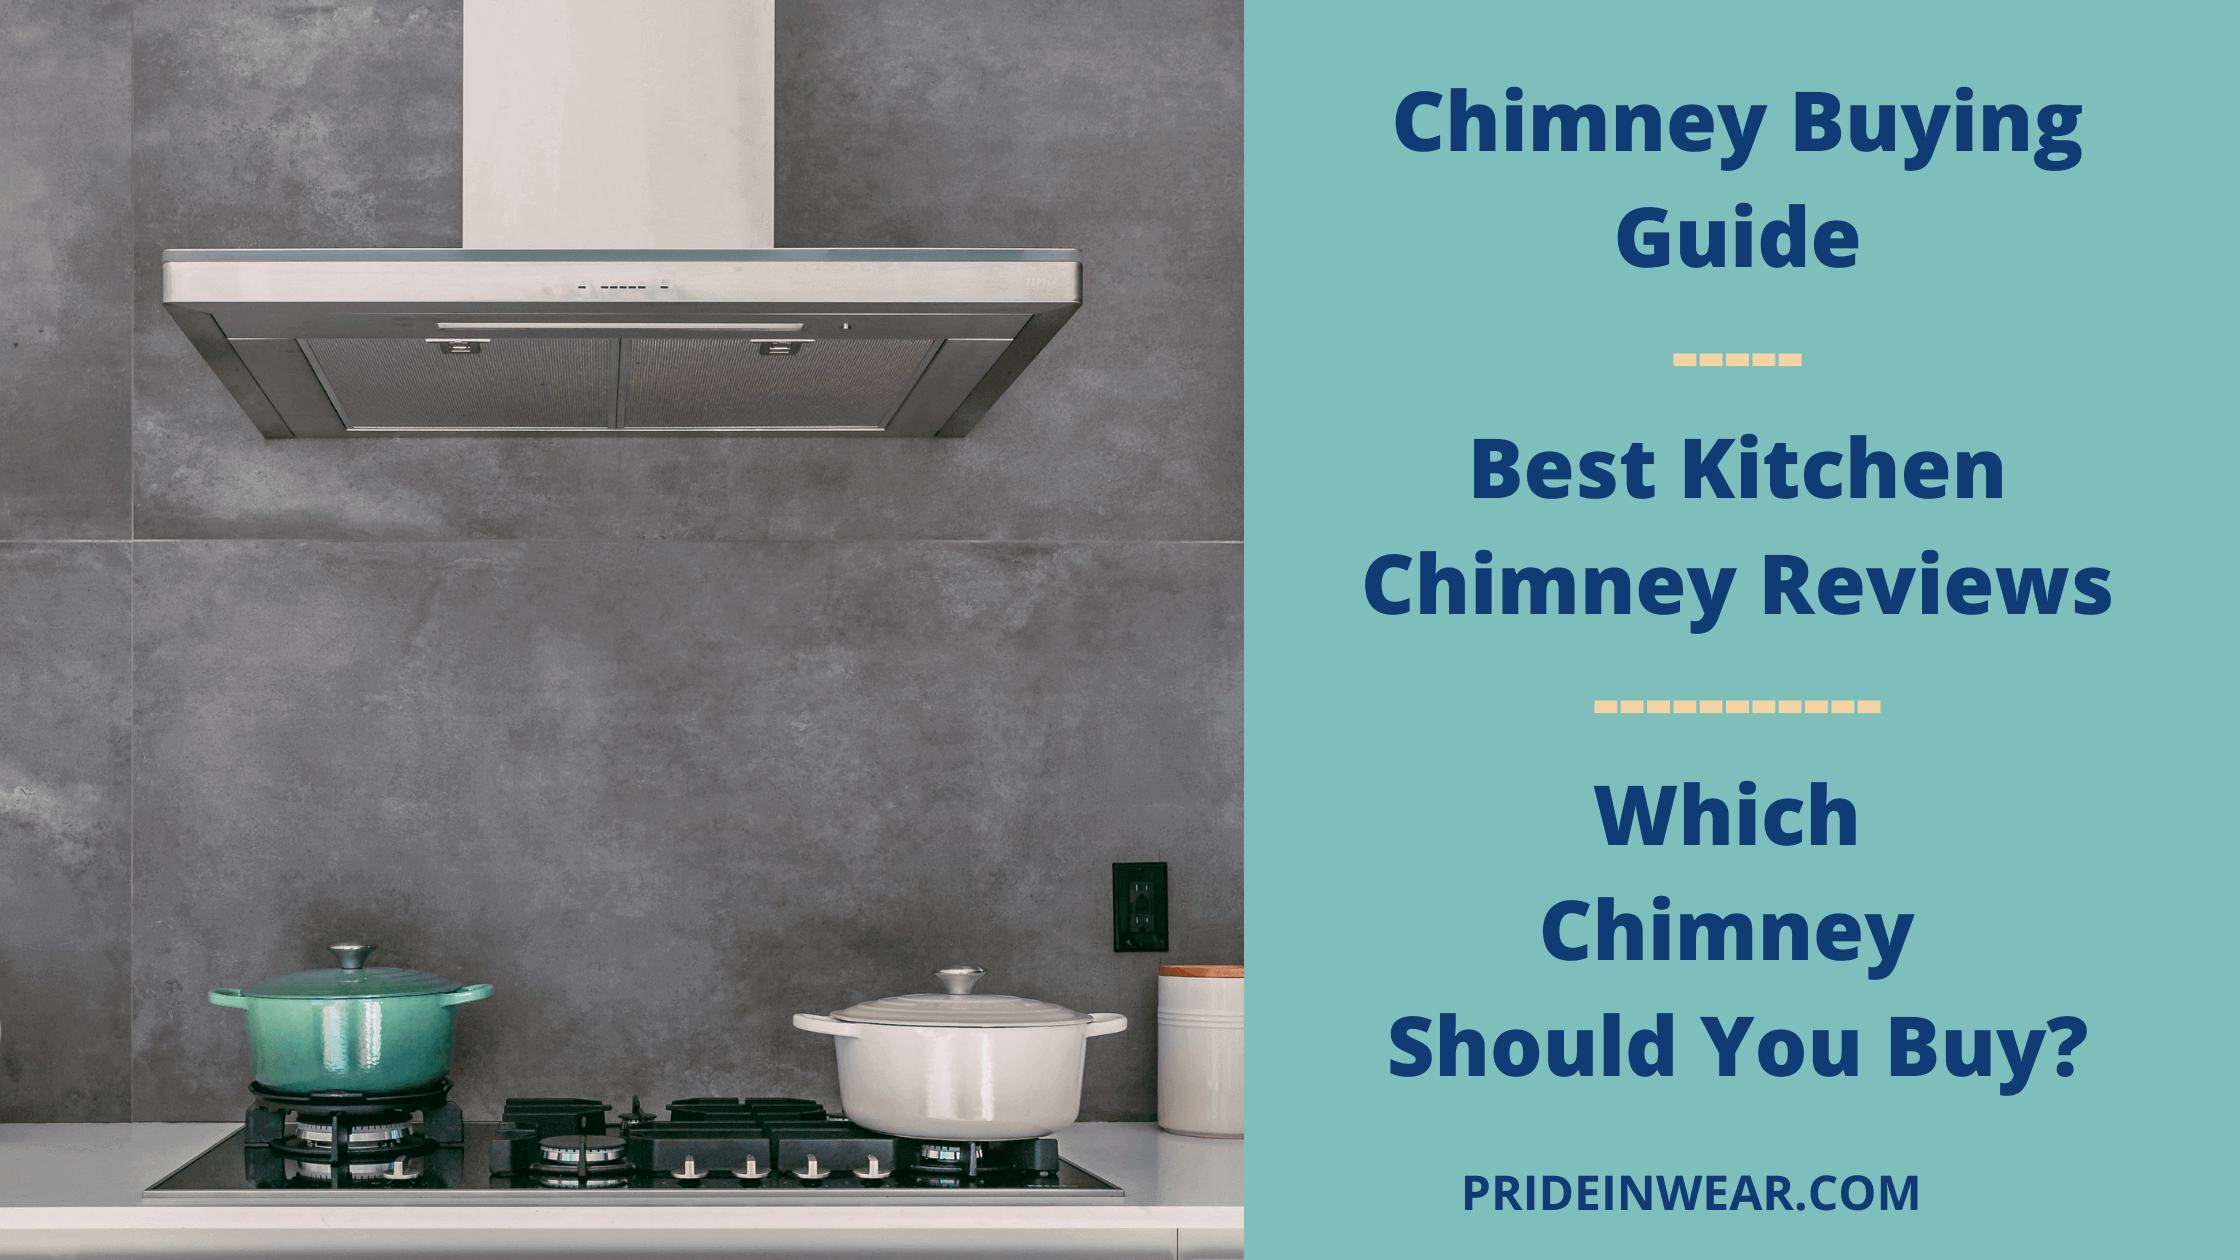  Best Kitchen Chimneys In India